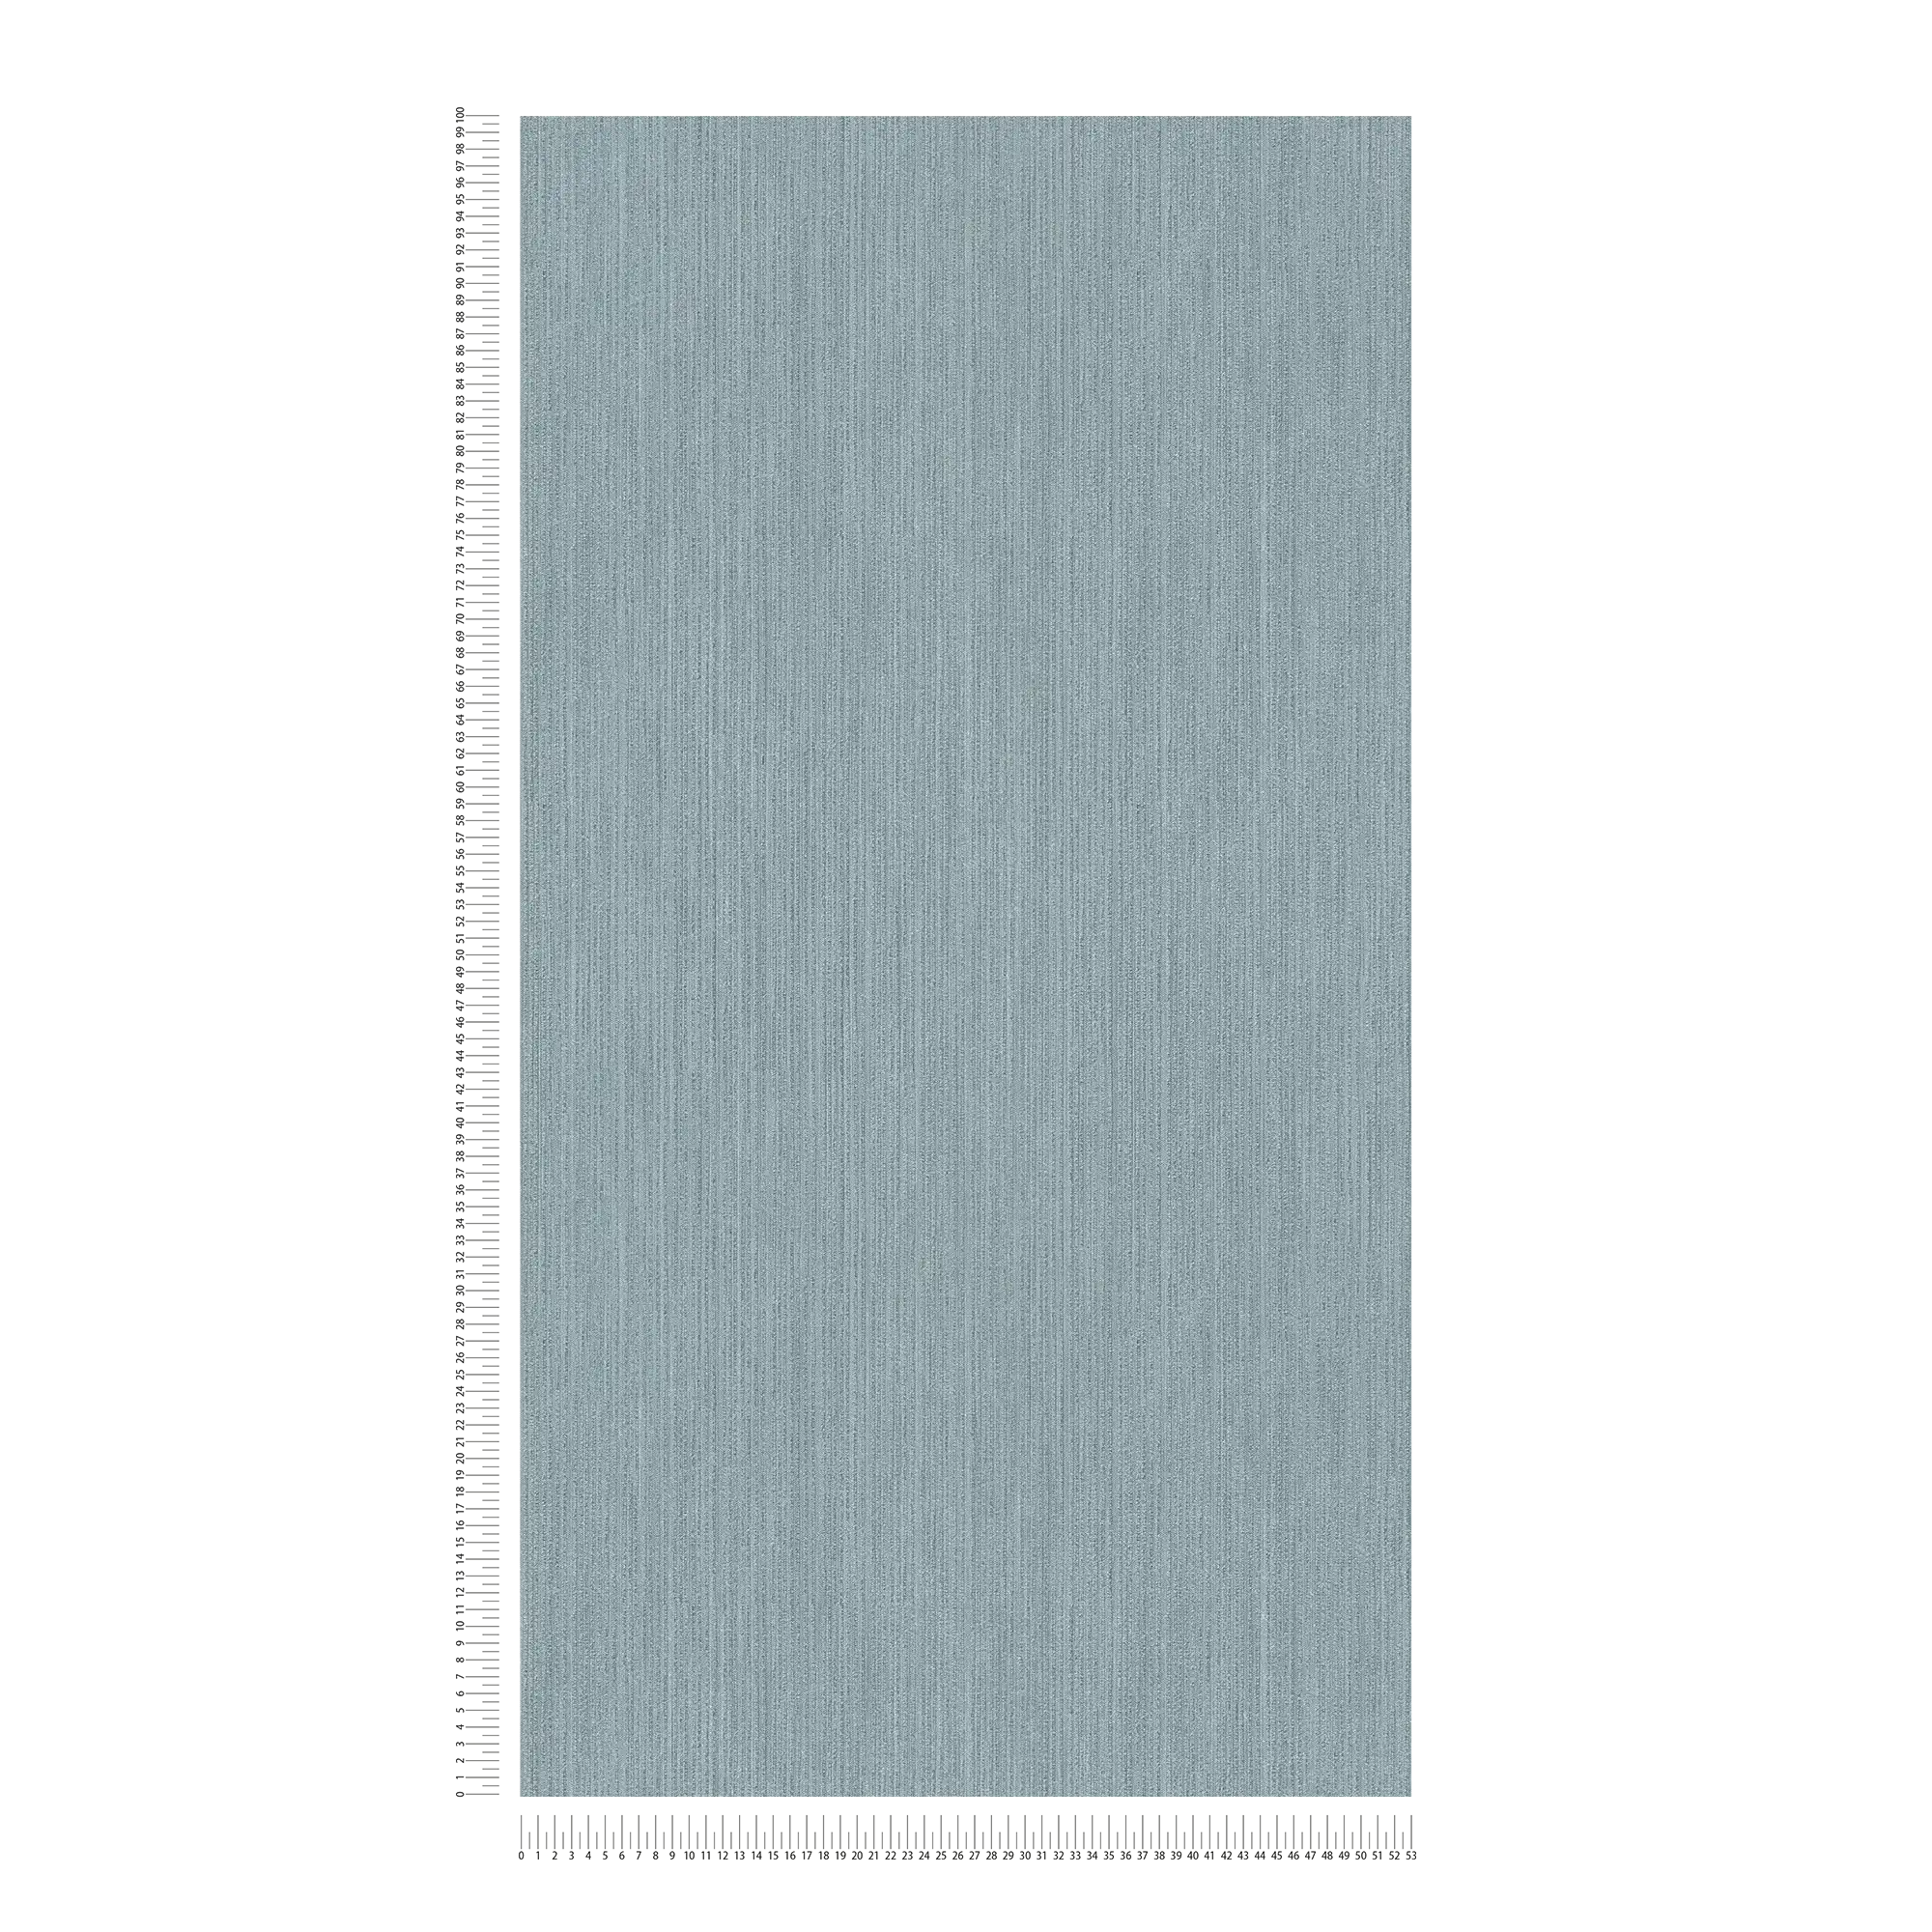             Jeans-Blaue Vliestapete mit Textiloptik – Blau, Grün
        